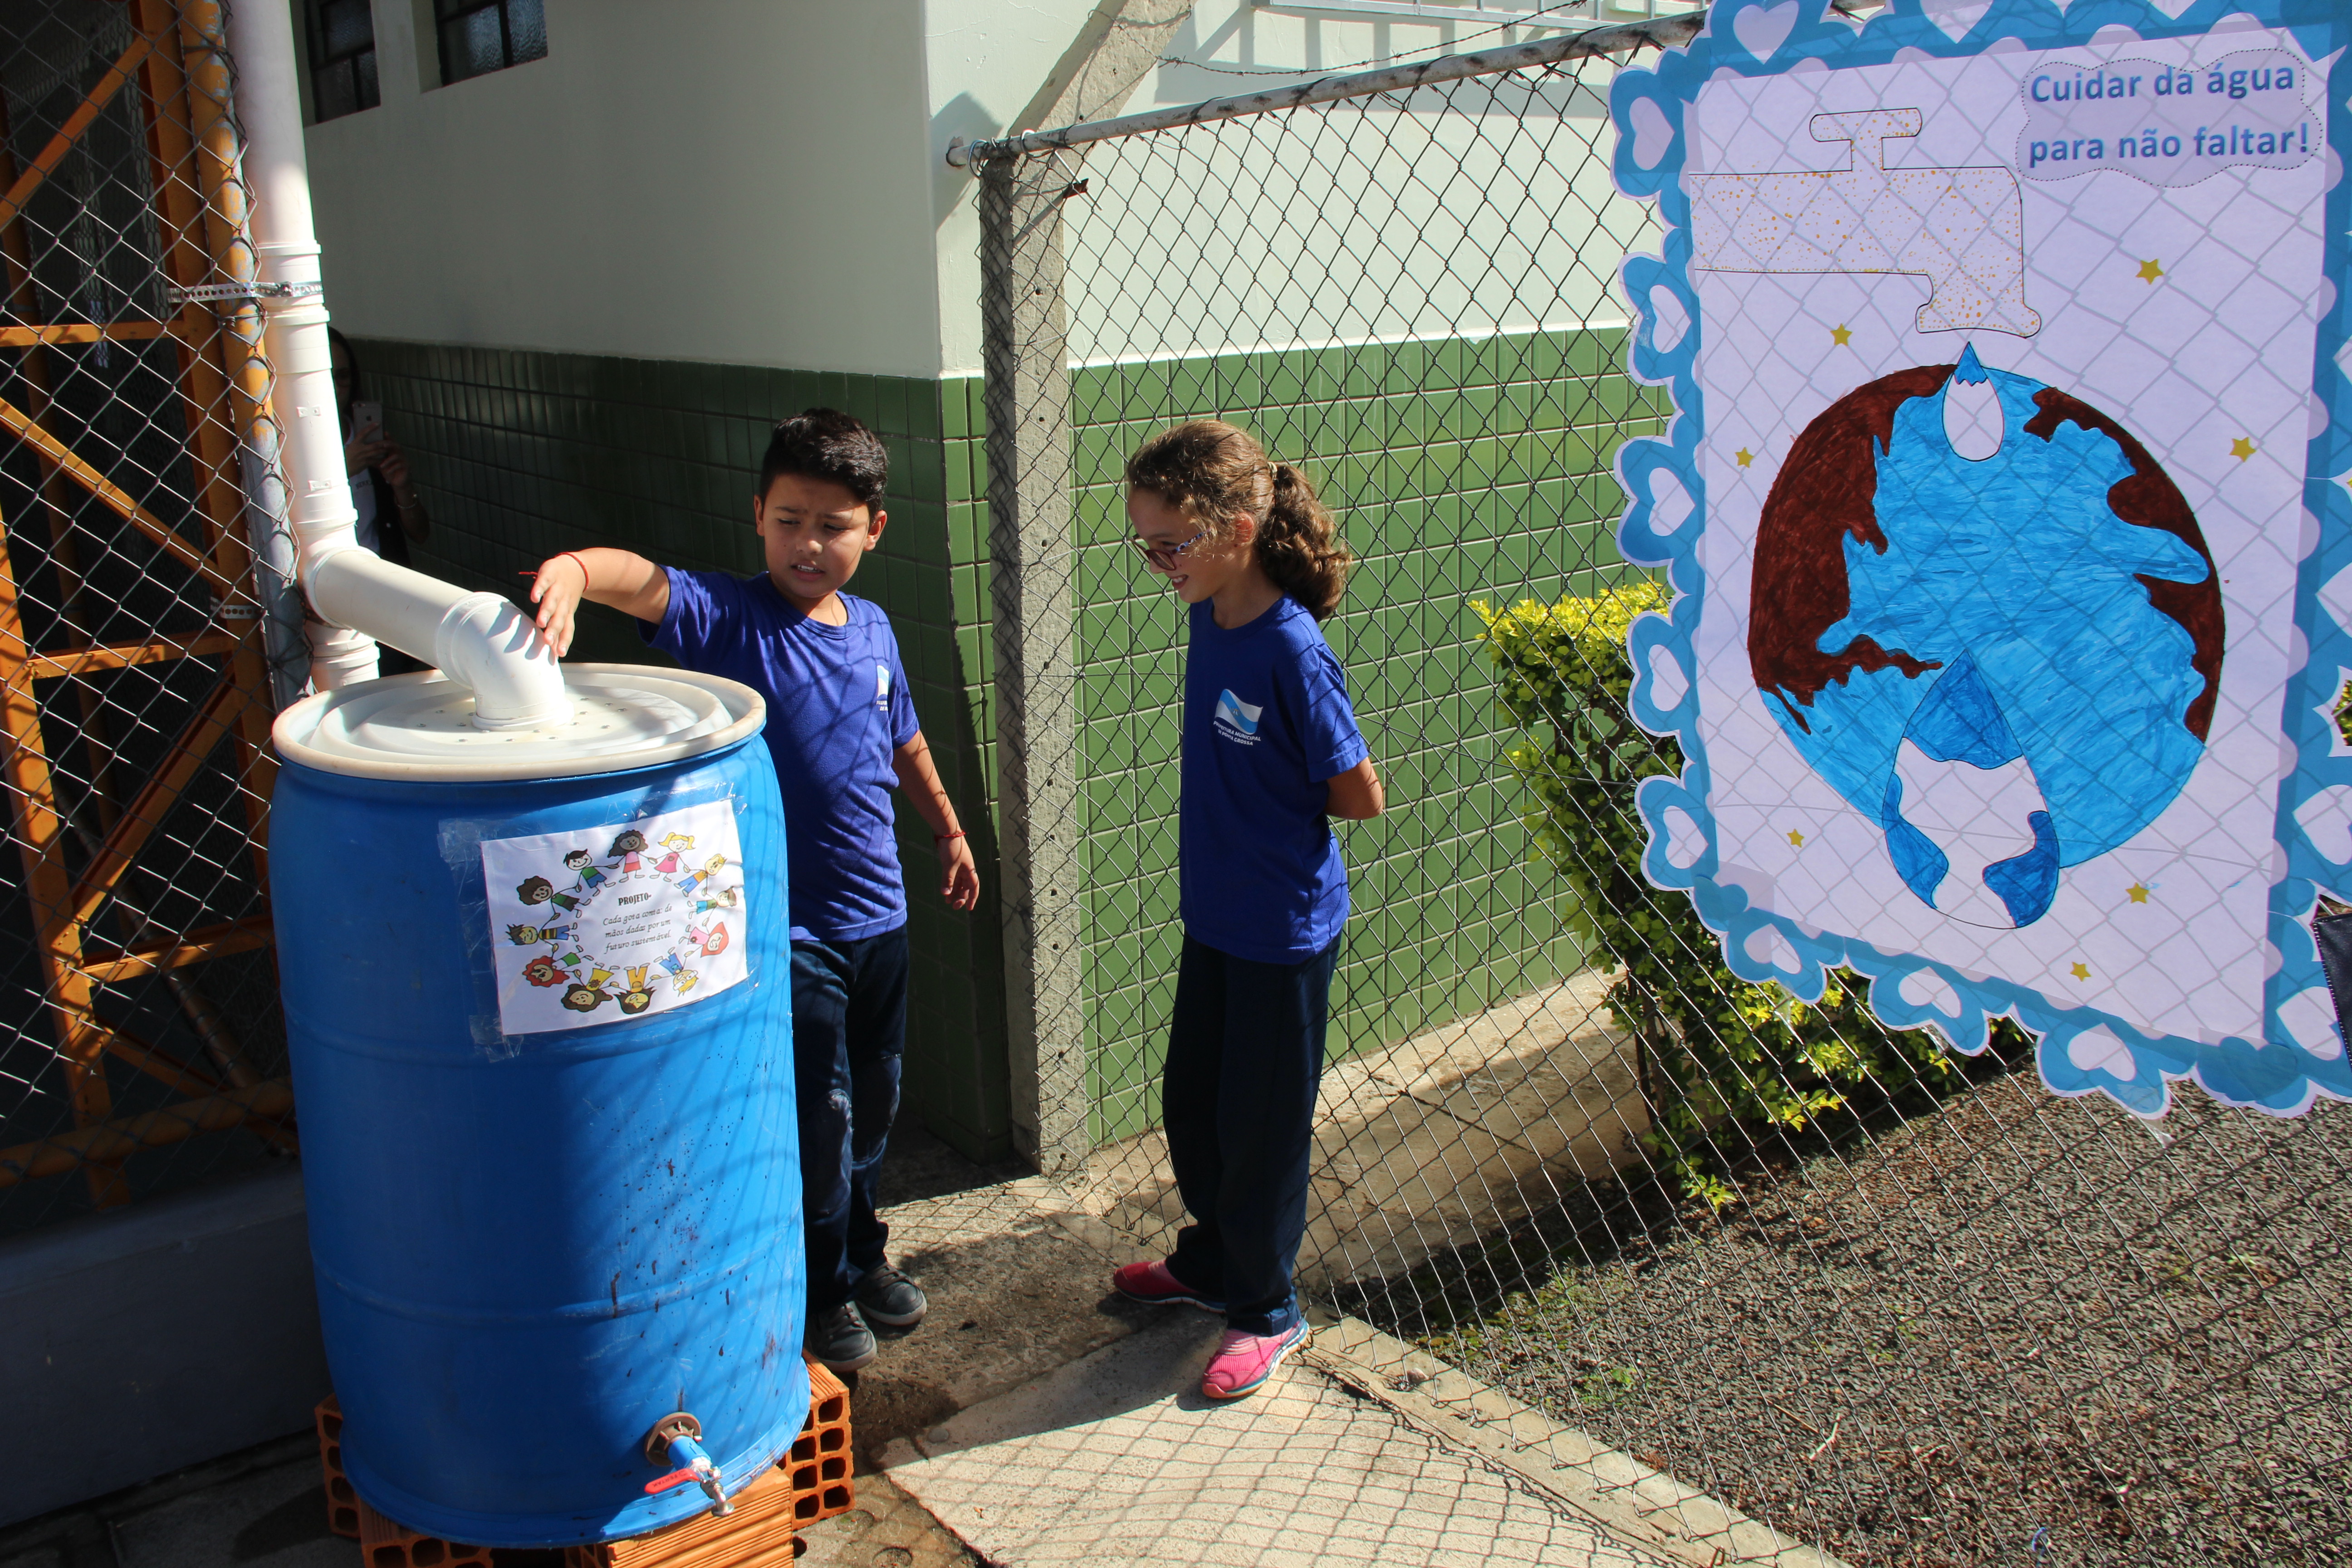 Escola Municipal constrói cisterna para aproveitar água da chuva